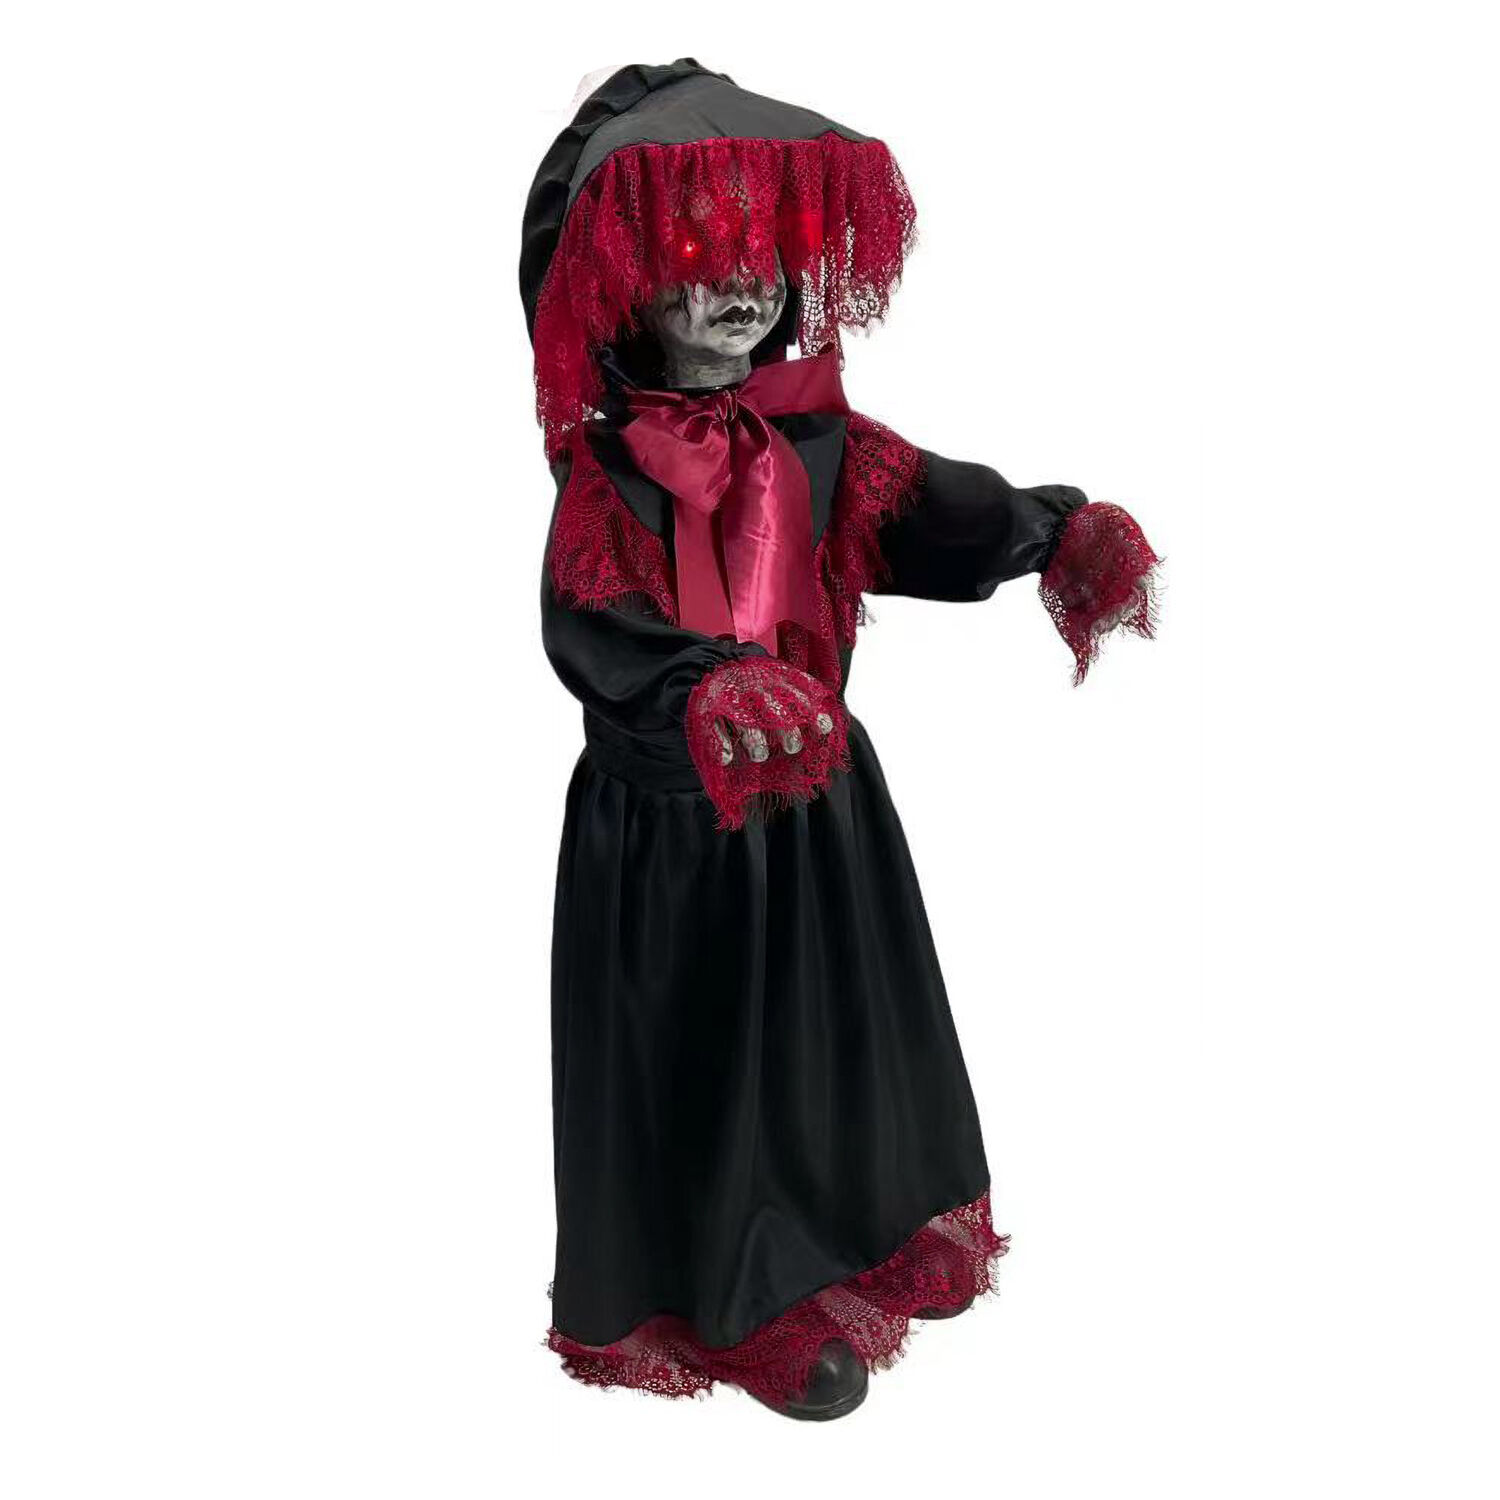 NEU Halloween-Deko-Figur Puppe rot-schwarz mit Licht, Sound und Bewegung, ca. 90cm Bild 2